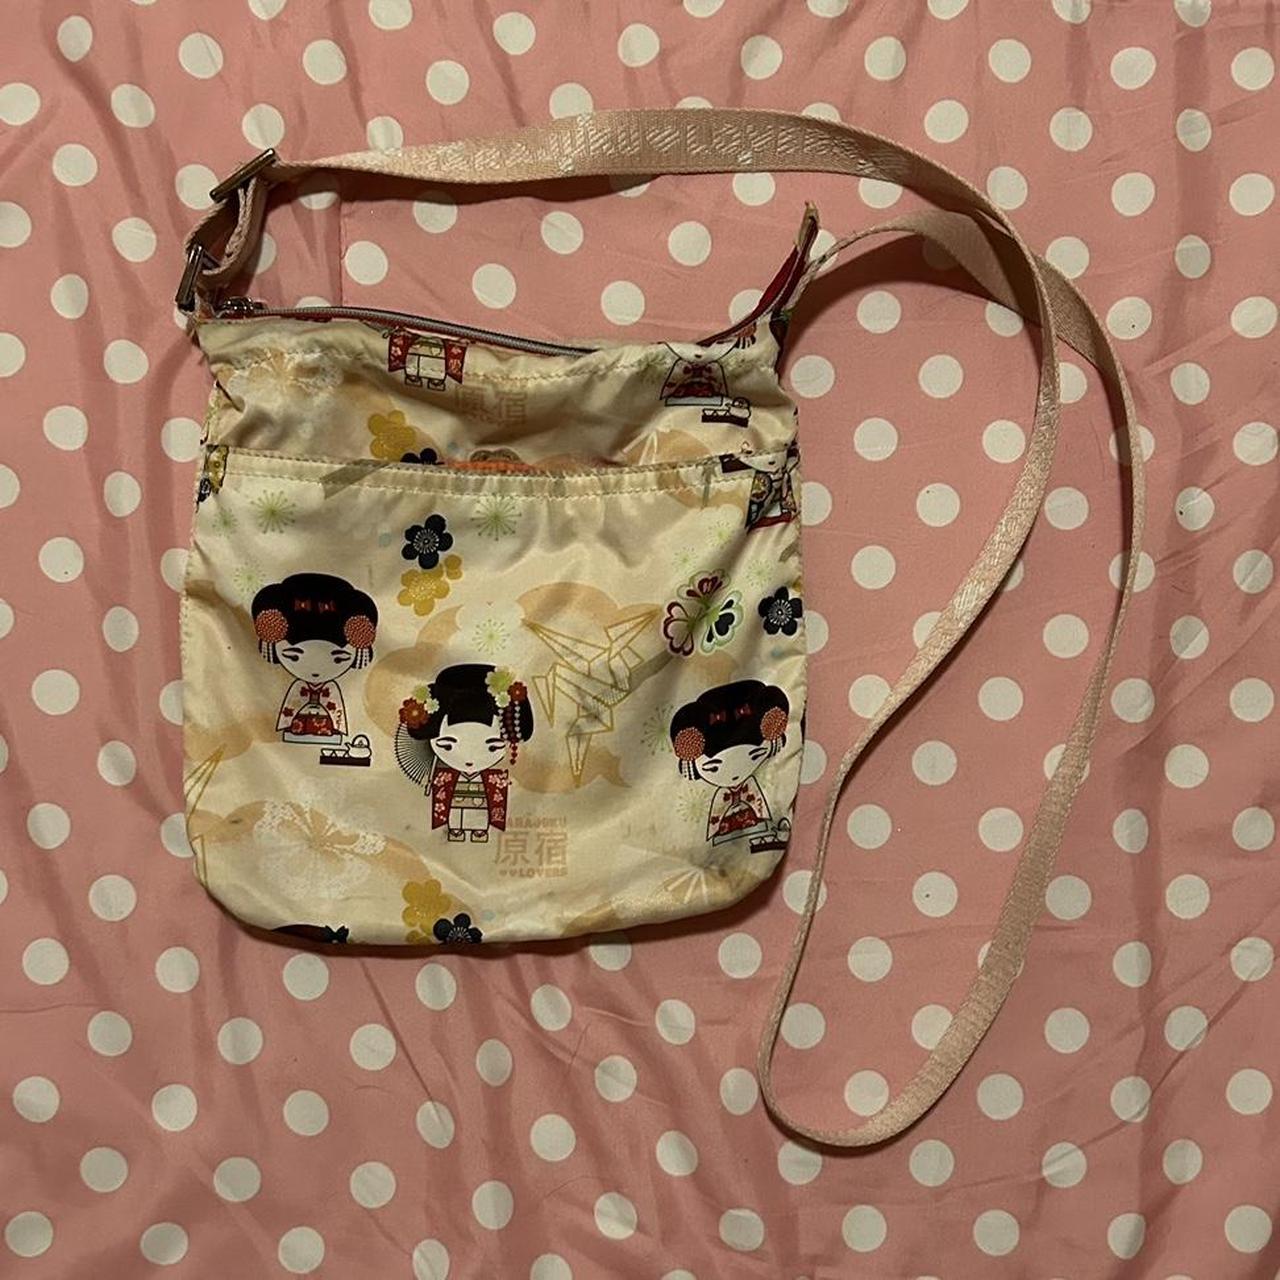 Harajuku Lovers Zip Closure Handbags | Mercari